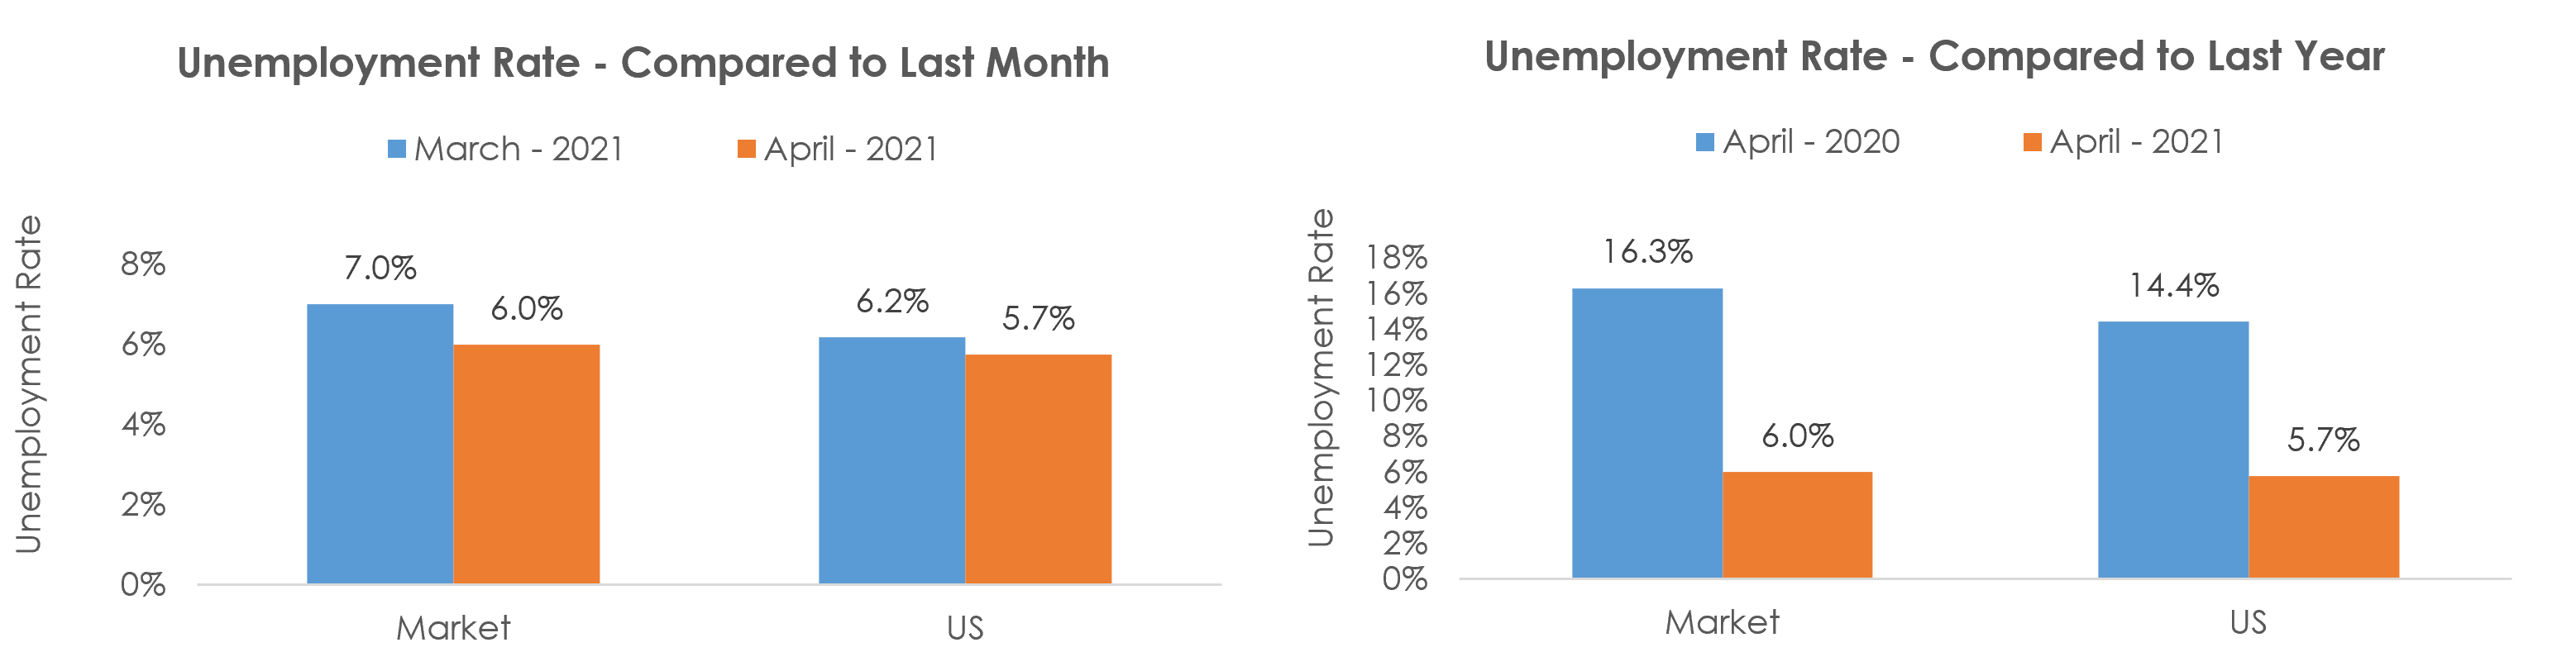 Utica-Rome, NY Unemployment April 2021